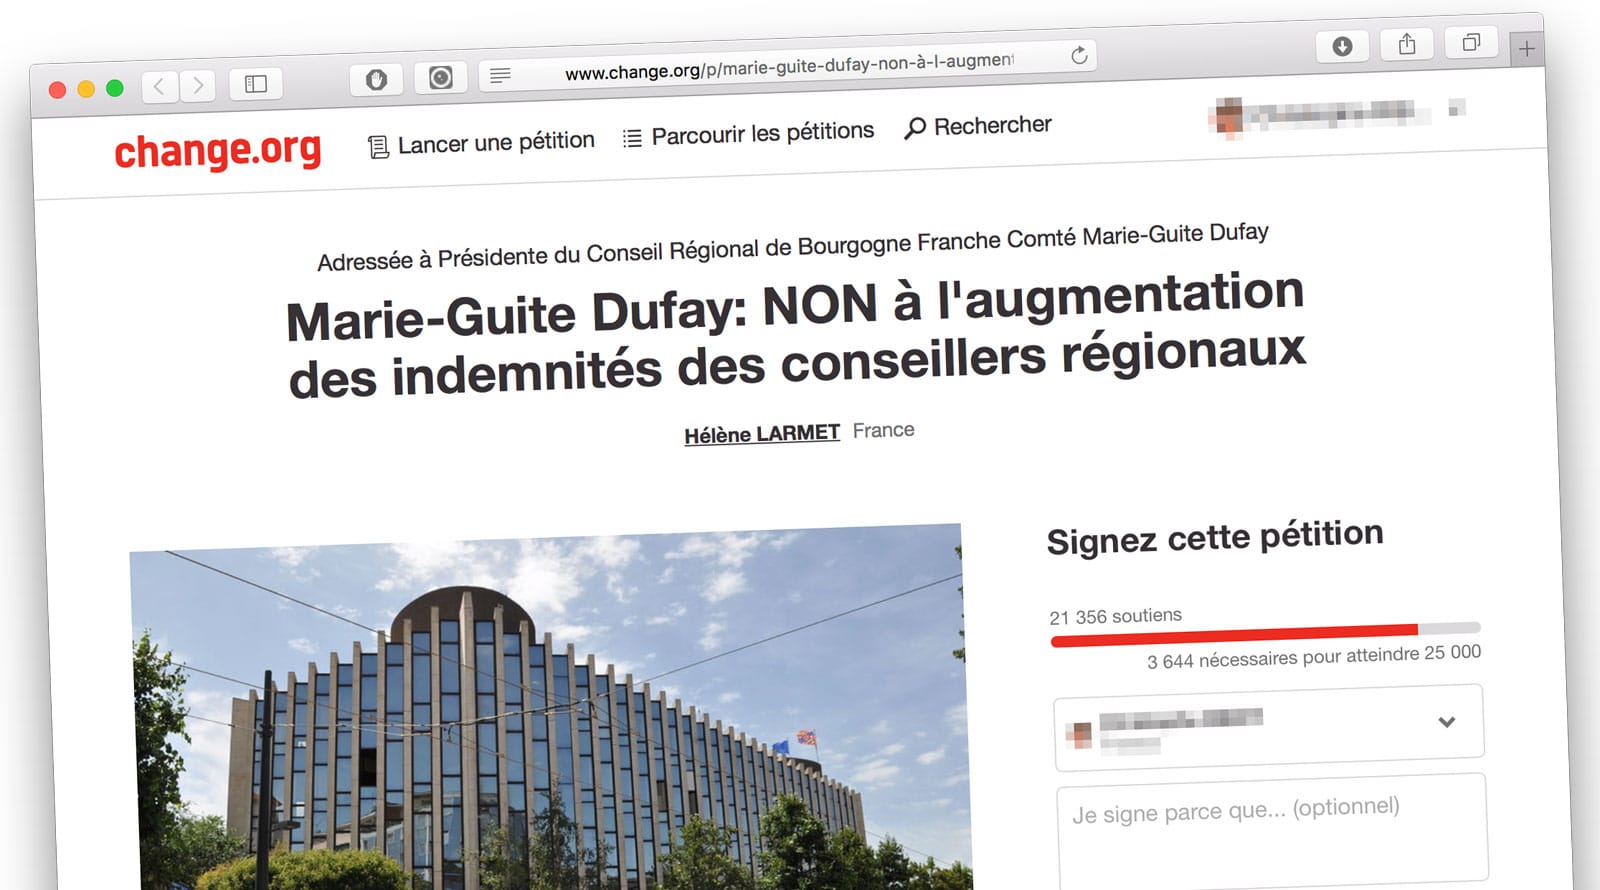 Pétition contre l'augmentation des indemnités des conseillers régionaux de la région Bourgogne-Francche-Comté